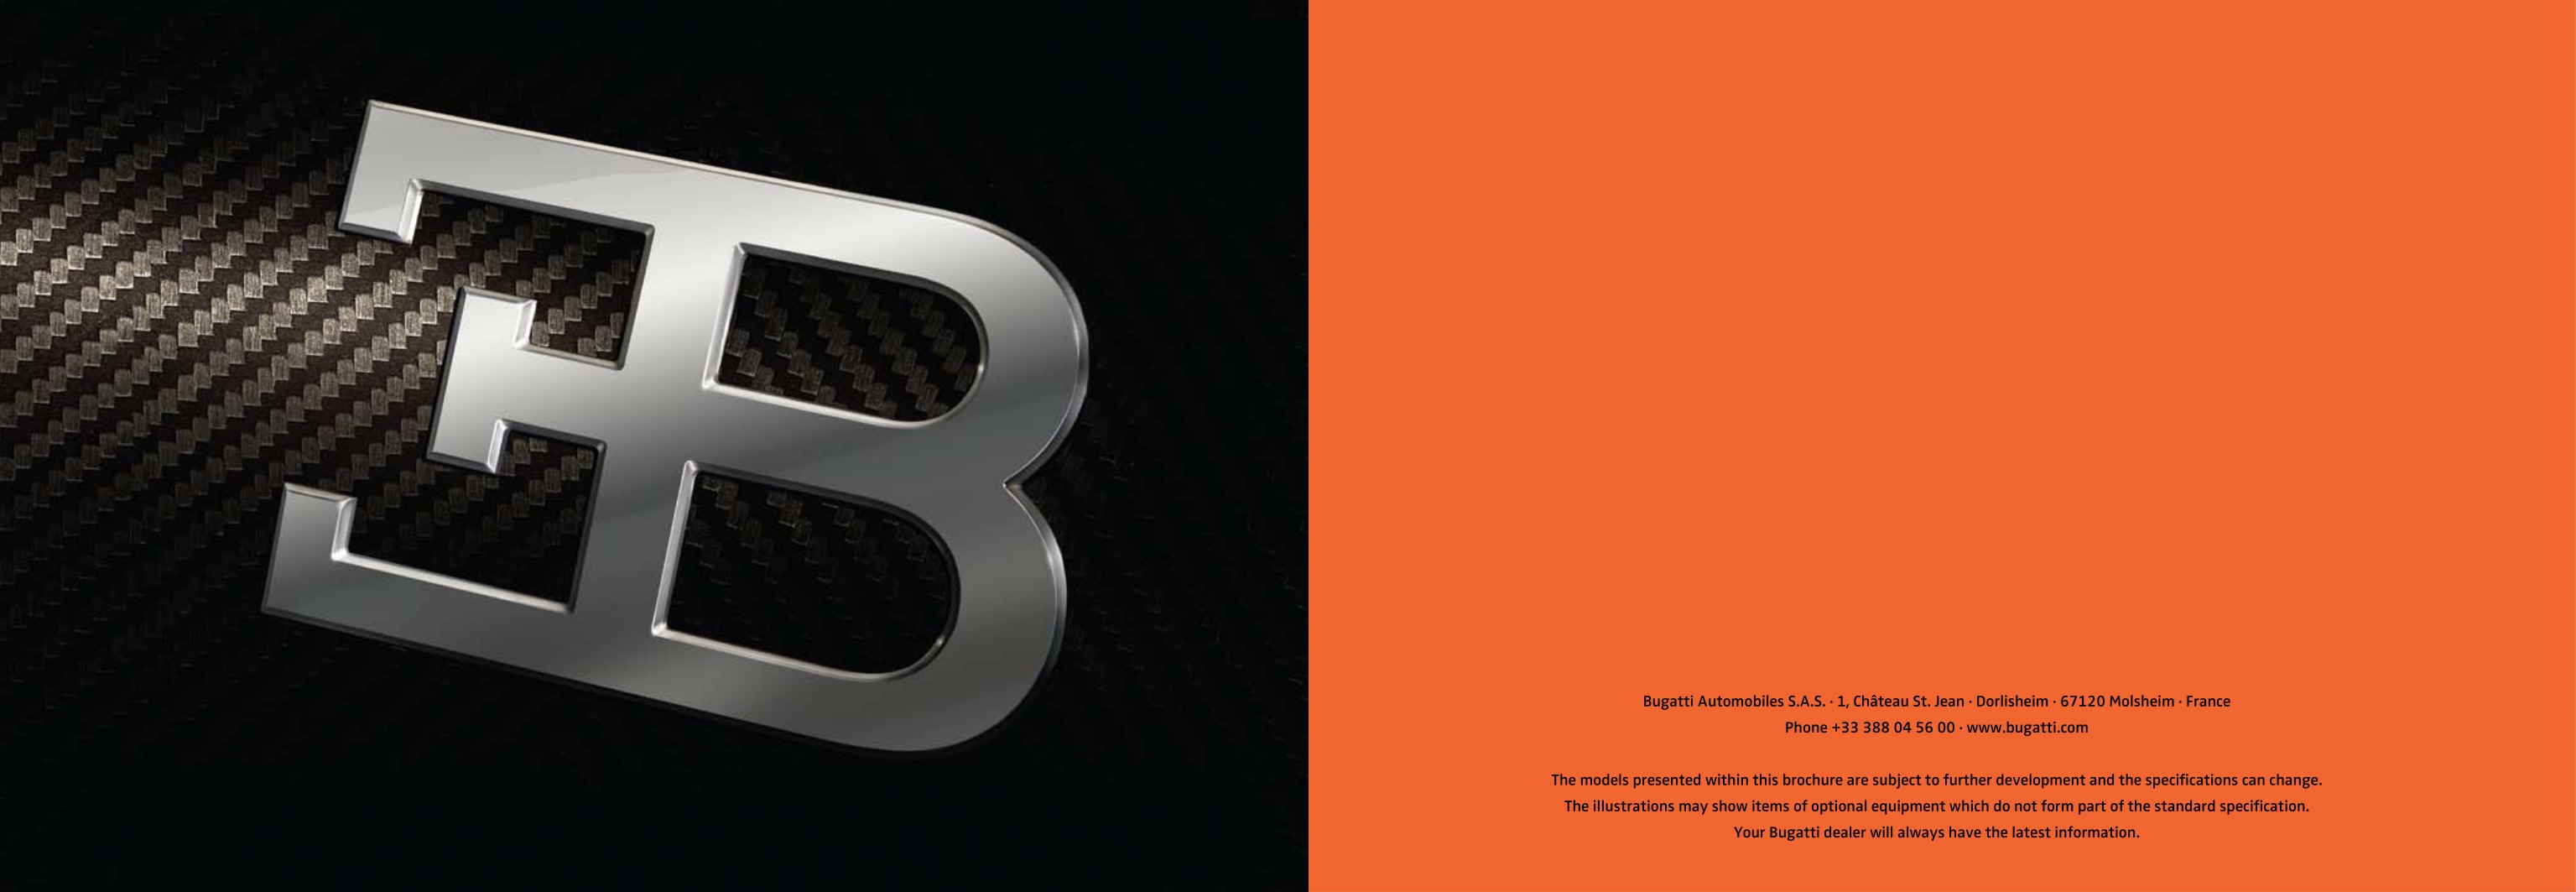 2008 Bugatti Veyron Sang Noir Brochure Page 18